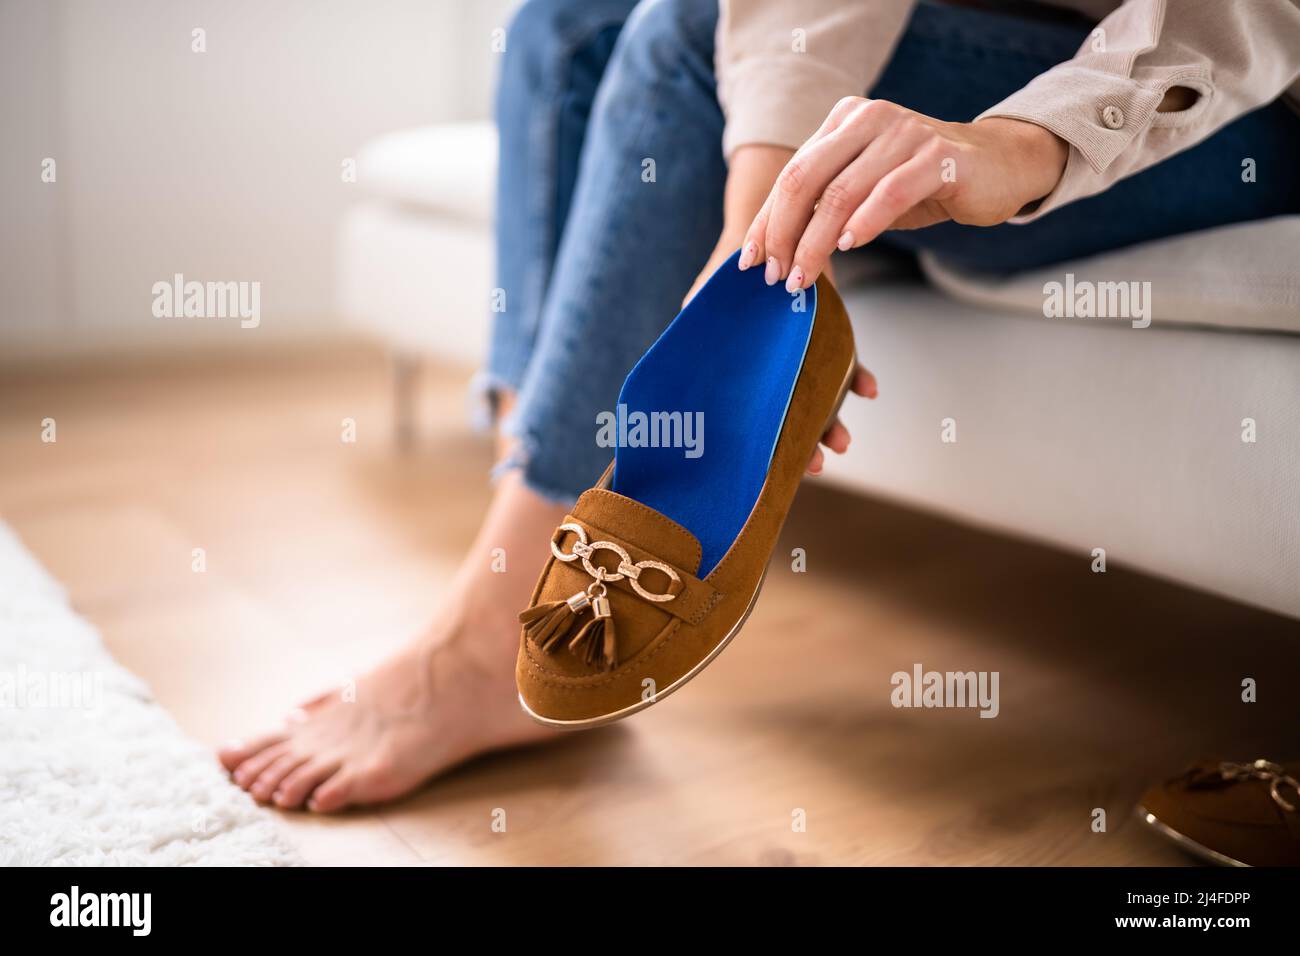 Schuhsohle In Schuhen Für Gesunde Fußgewölbe Stockfoto